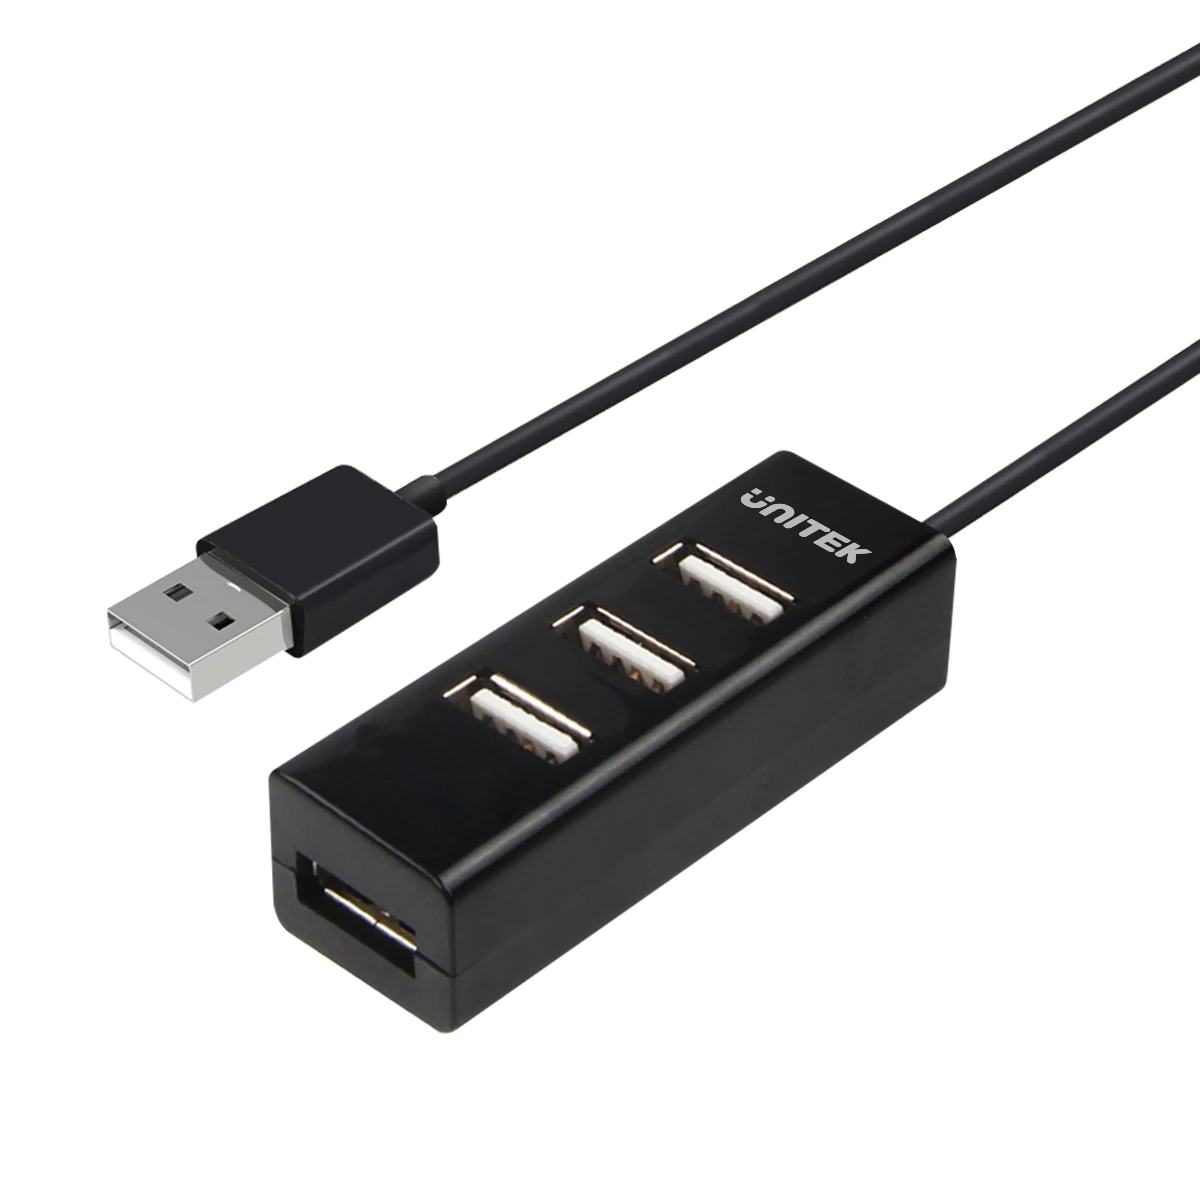 UNITEK Y-2140 USB 2.0 Hub (80cm Cable)